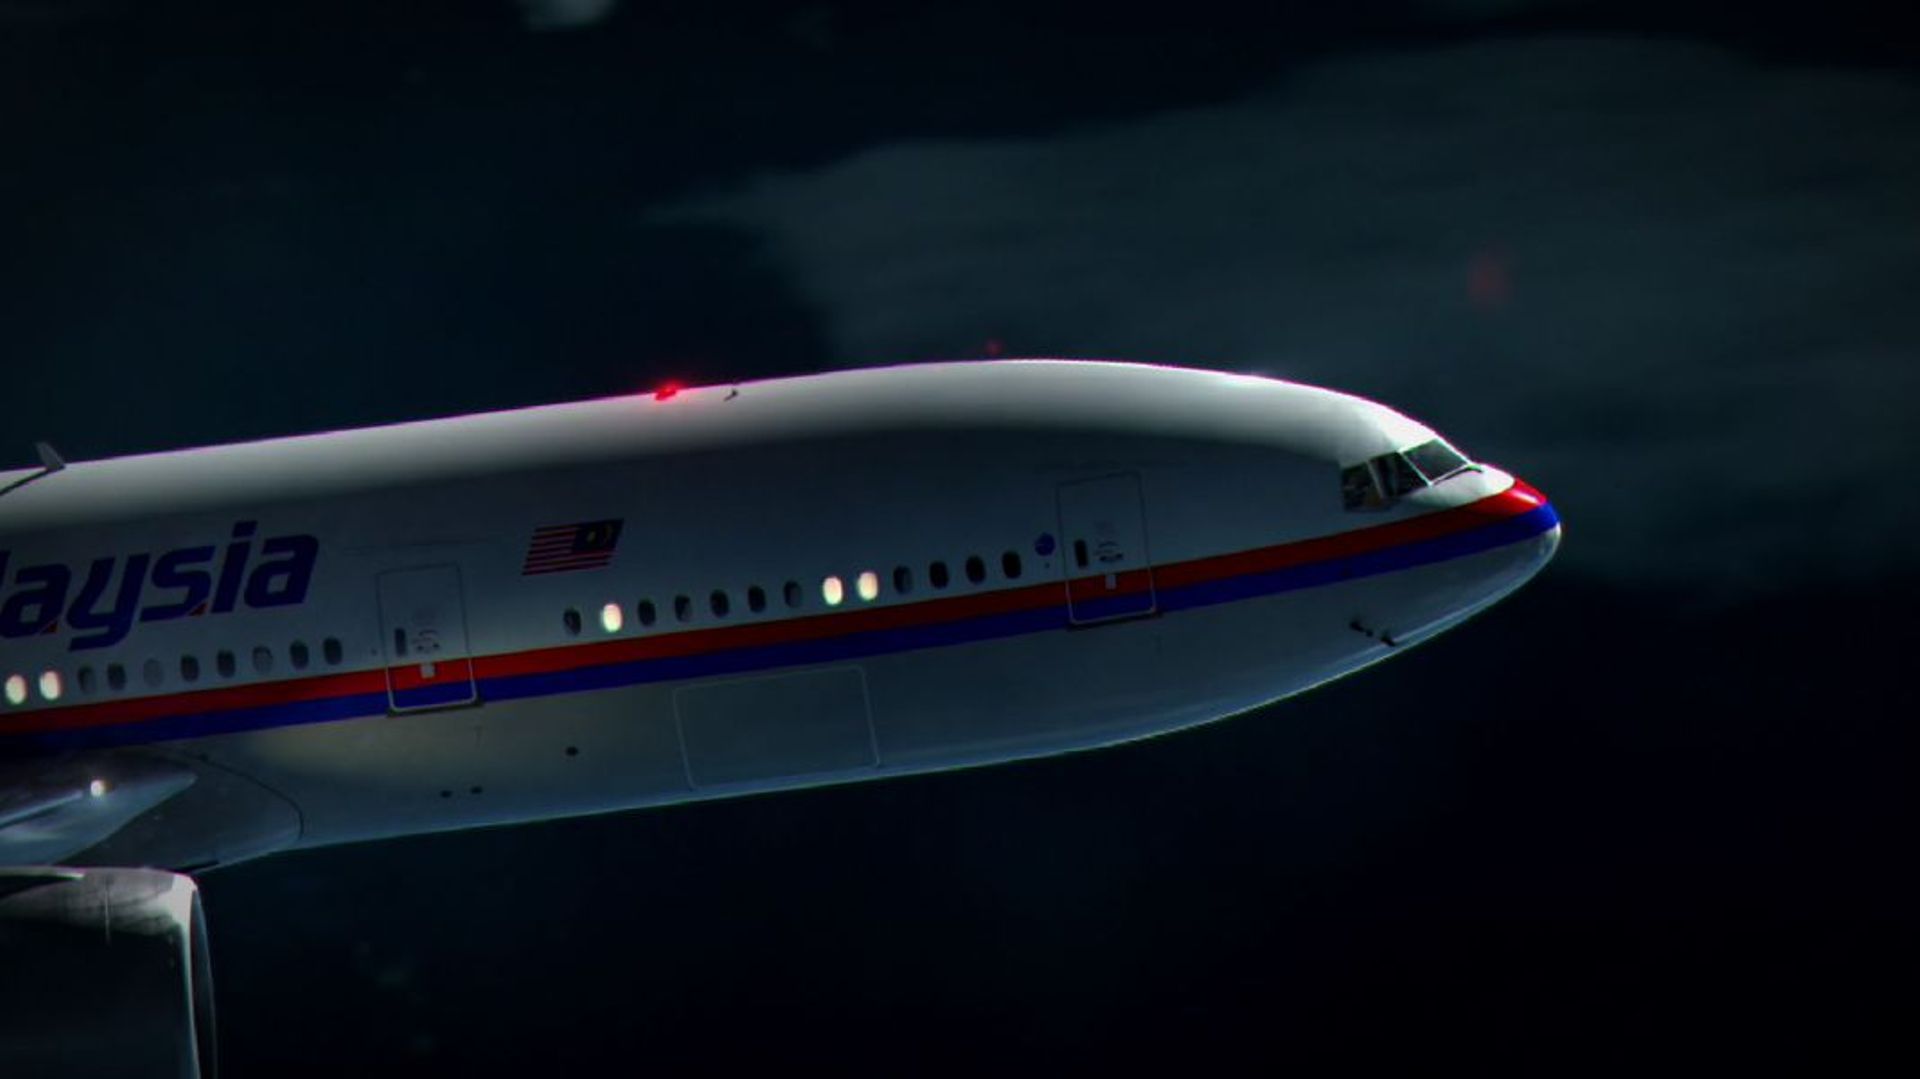 "Questions à La Une : Disparition du MH370 de la Malaysia Airlines" - Et si on nous avait menti ?